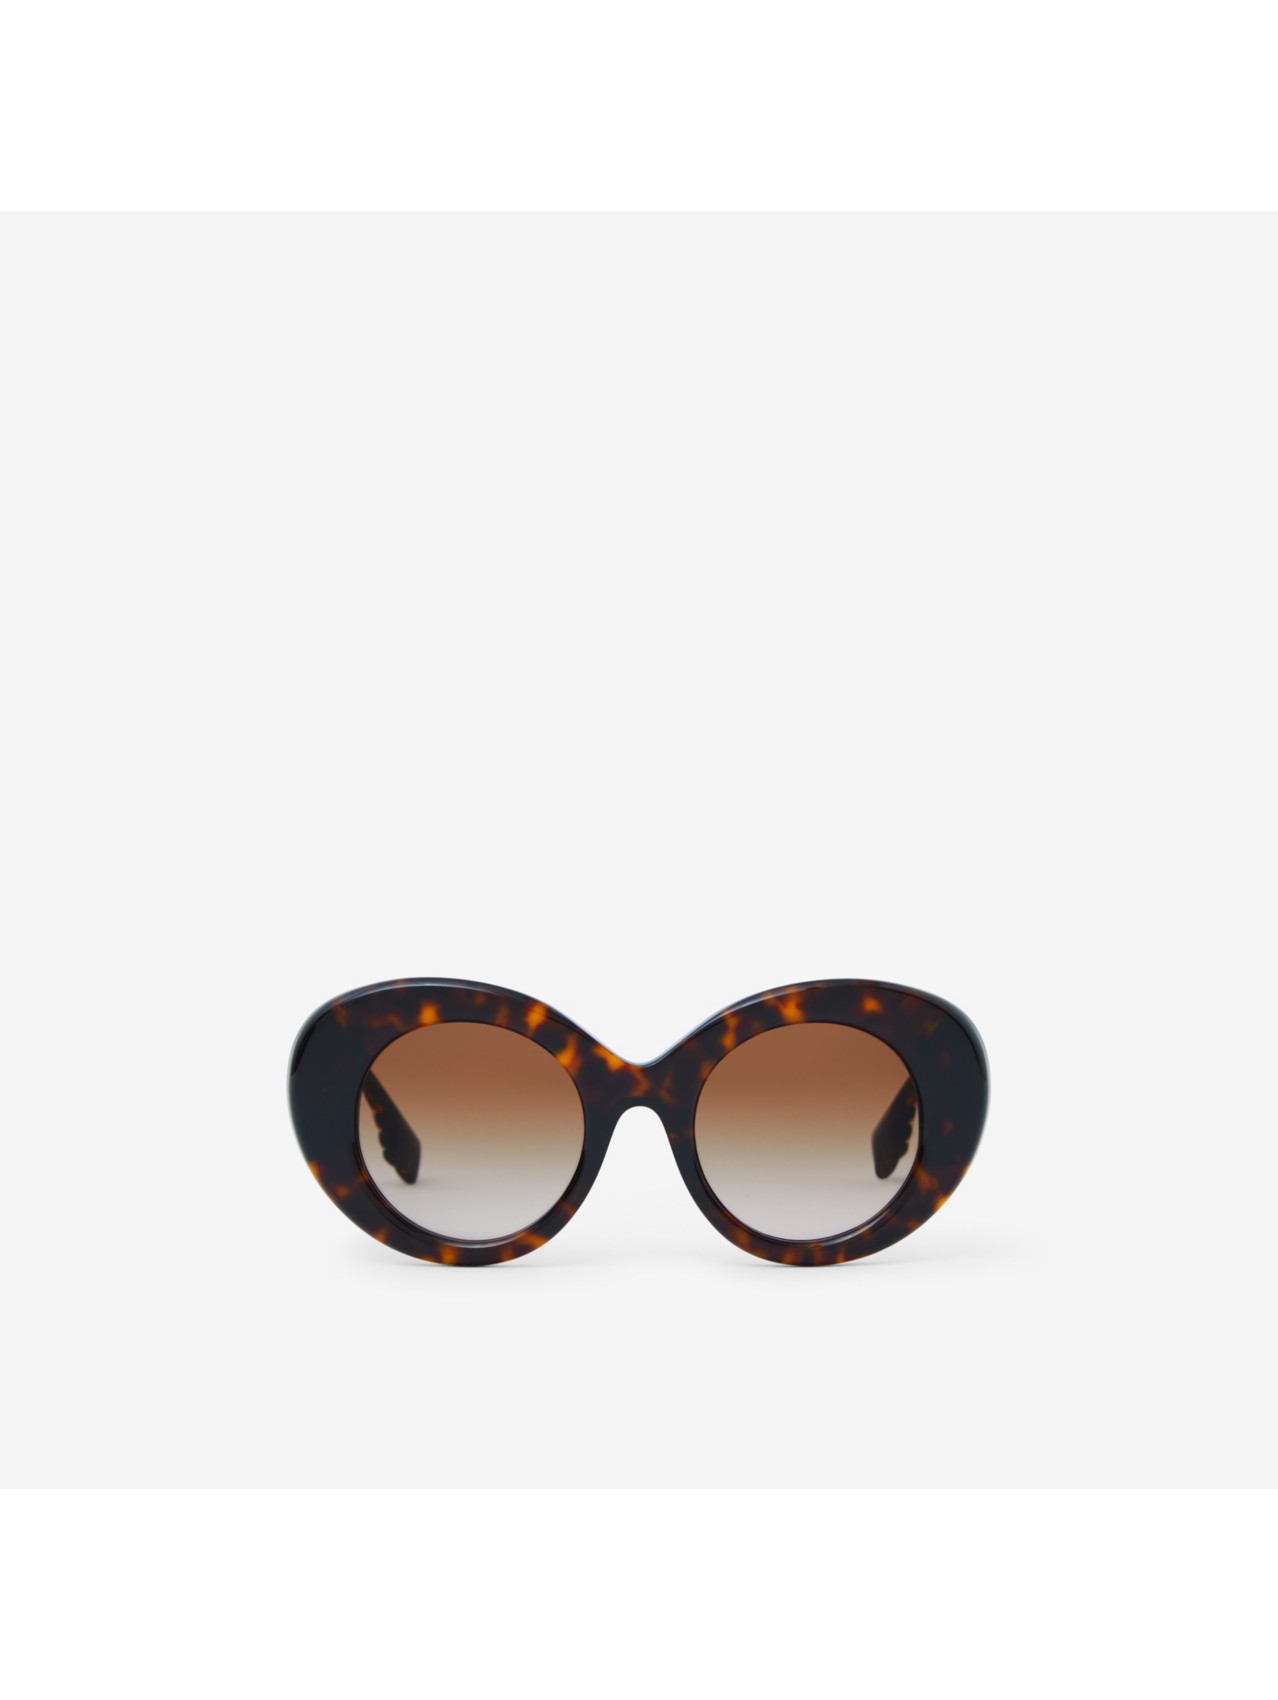 Women's Designer Eyewear | Opticals & Sunglasses | Burberry® Official